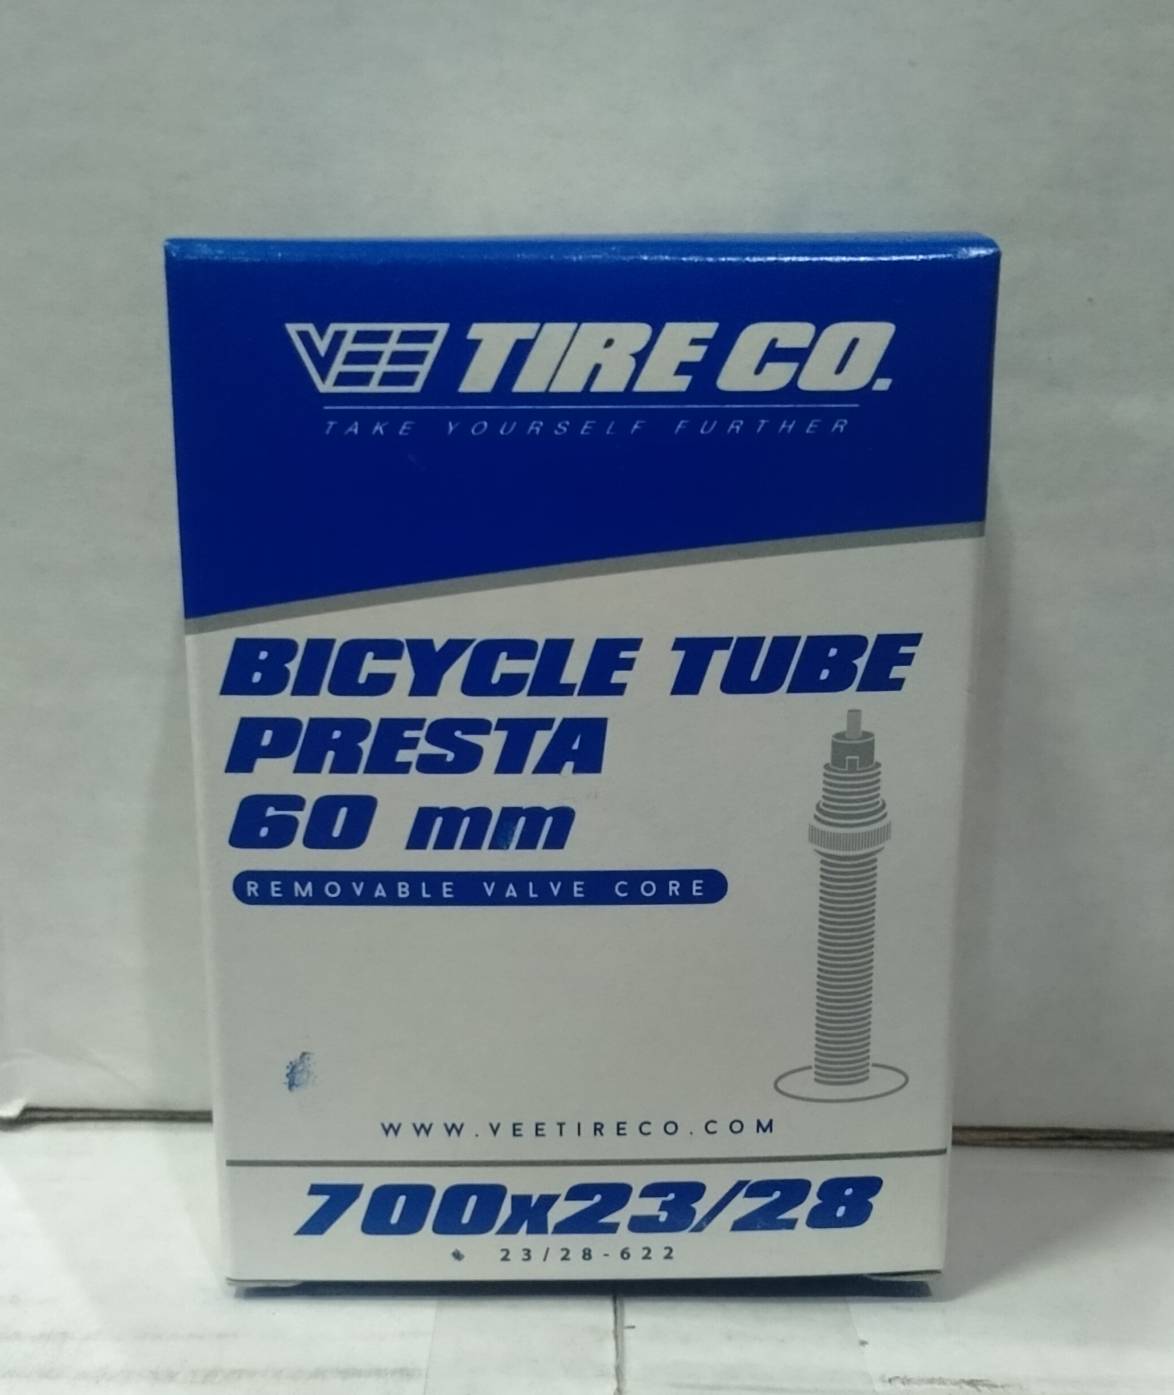 ยางในจักรยาน VEE TIRE CO ขนาด 700X23/28-622 48 MM / 60 MM / 80MM (บรรจุ 1 เส้น)